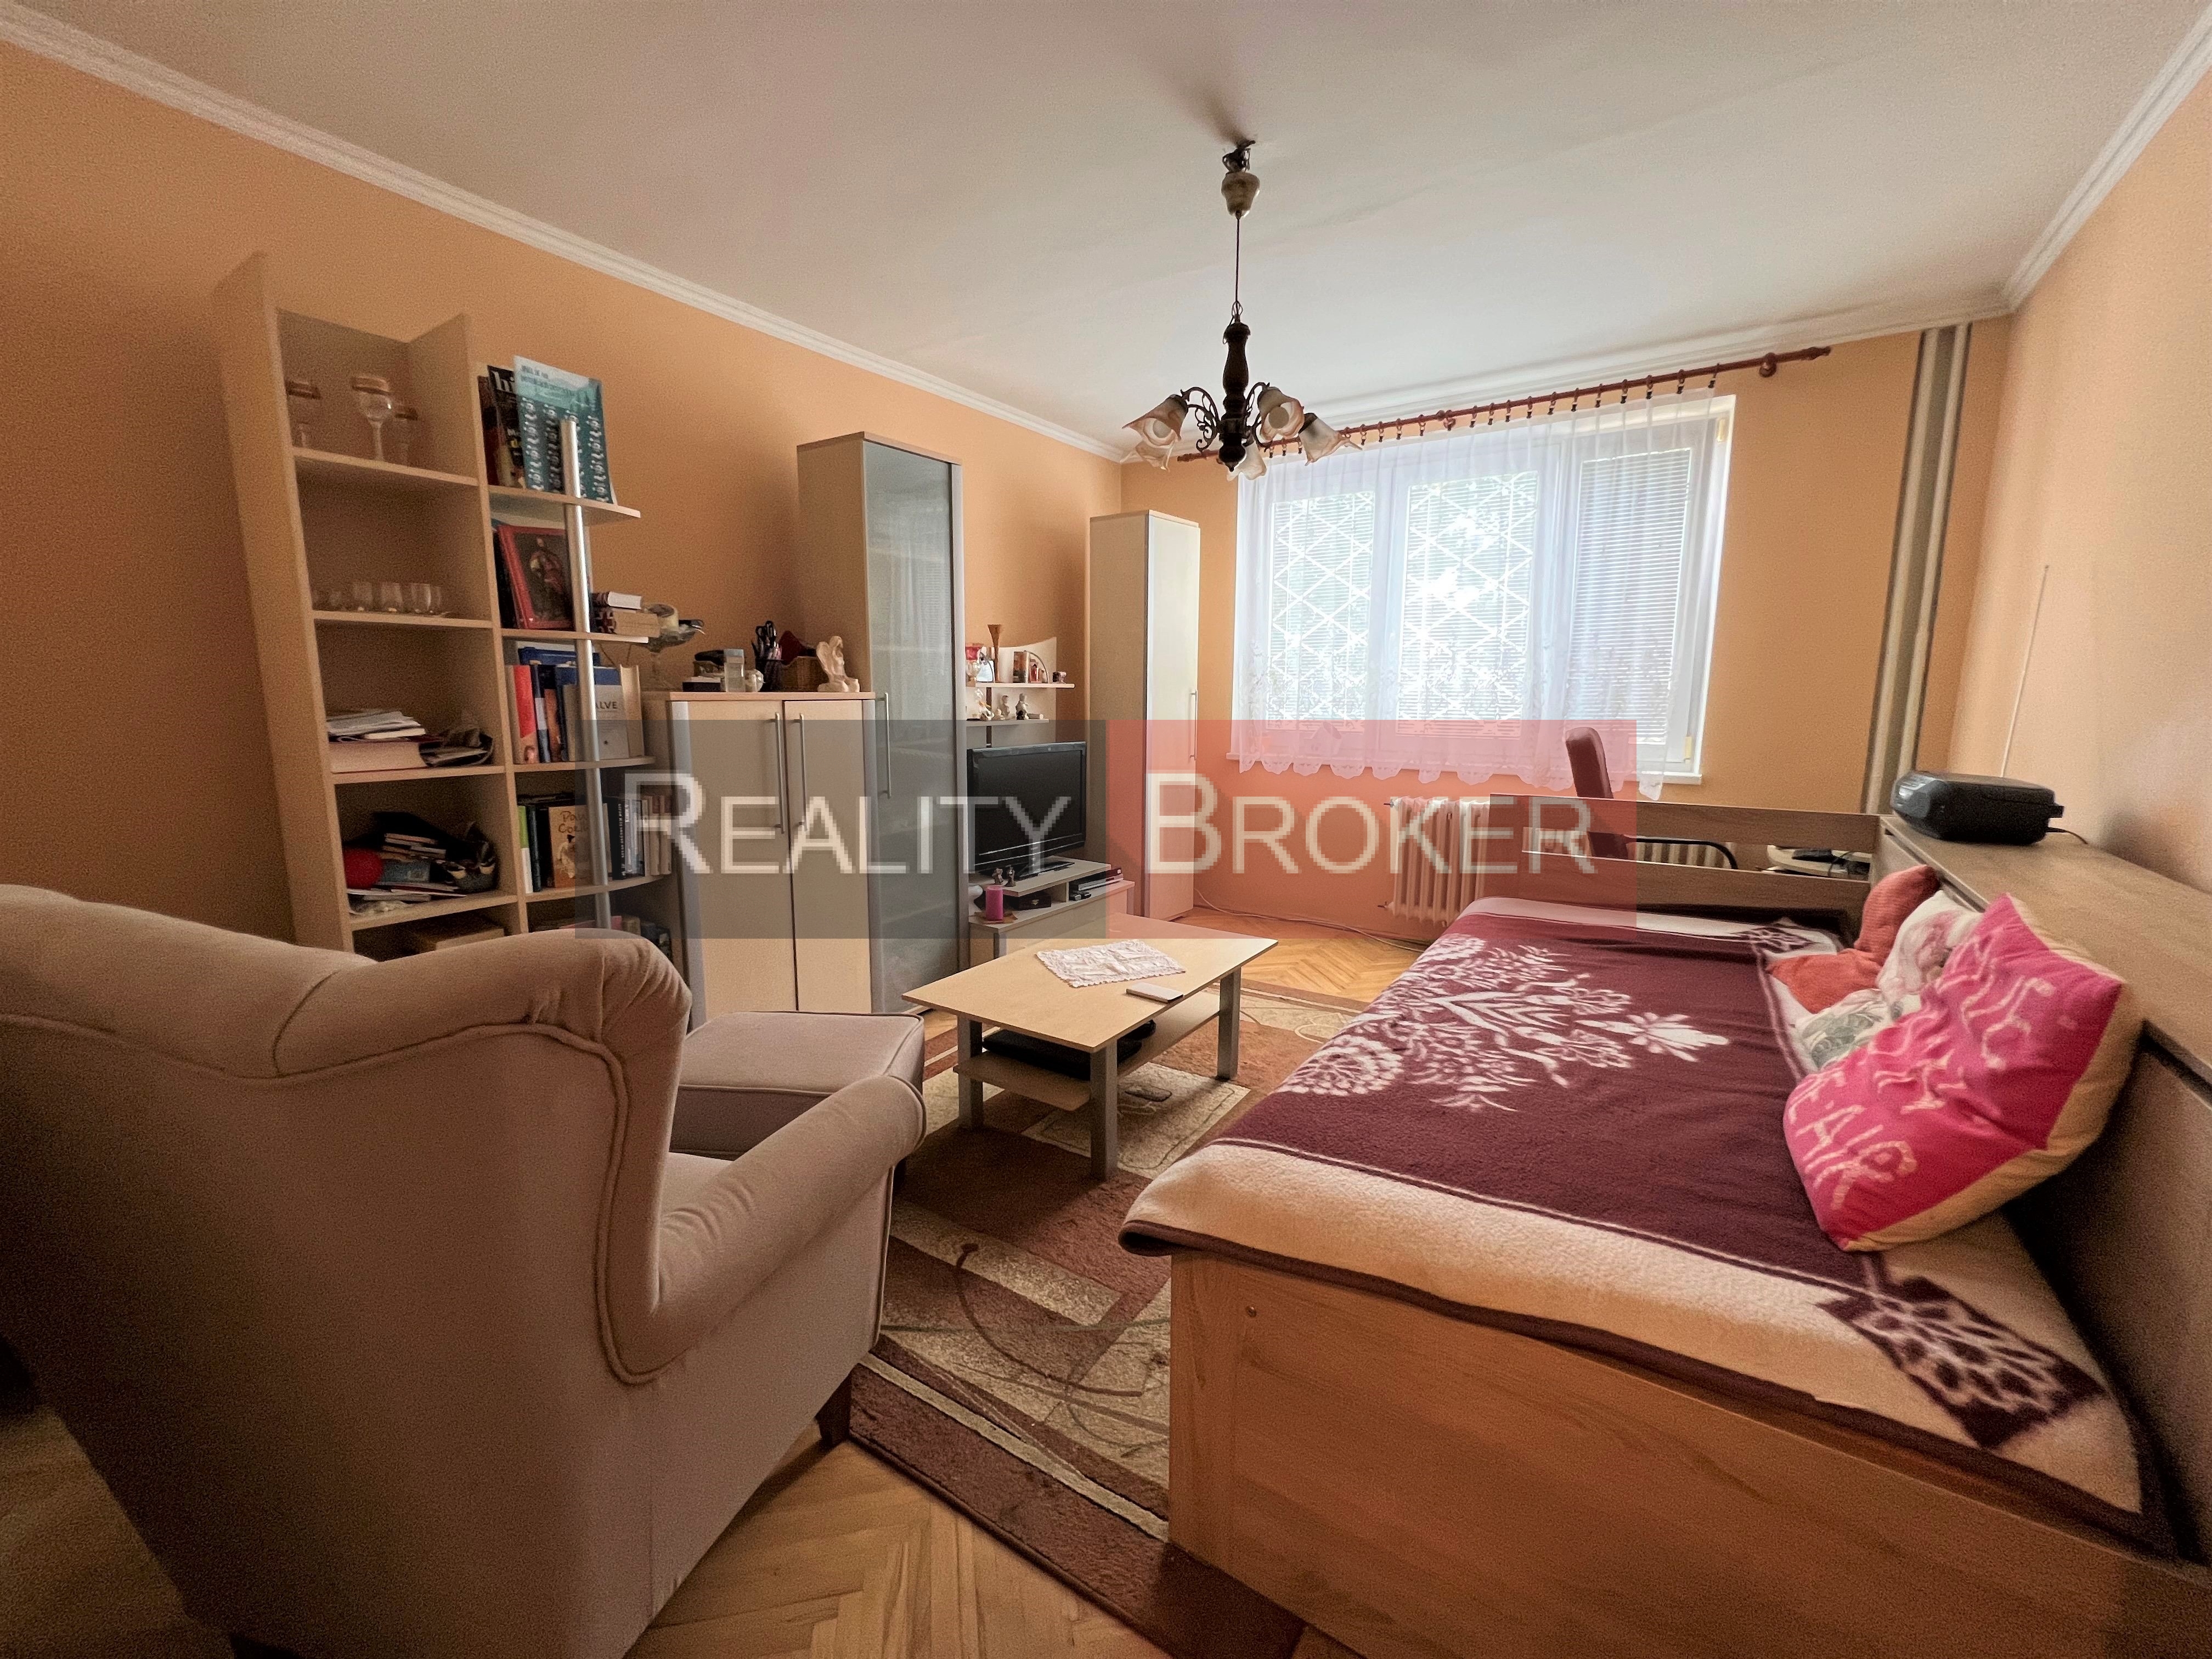 REALITY BROKER ponúka na predaj pekný, zariadený 1 izb. byt vo vyhľadávanej lokalite mesta Senec